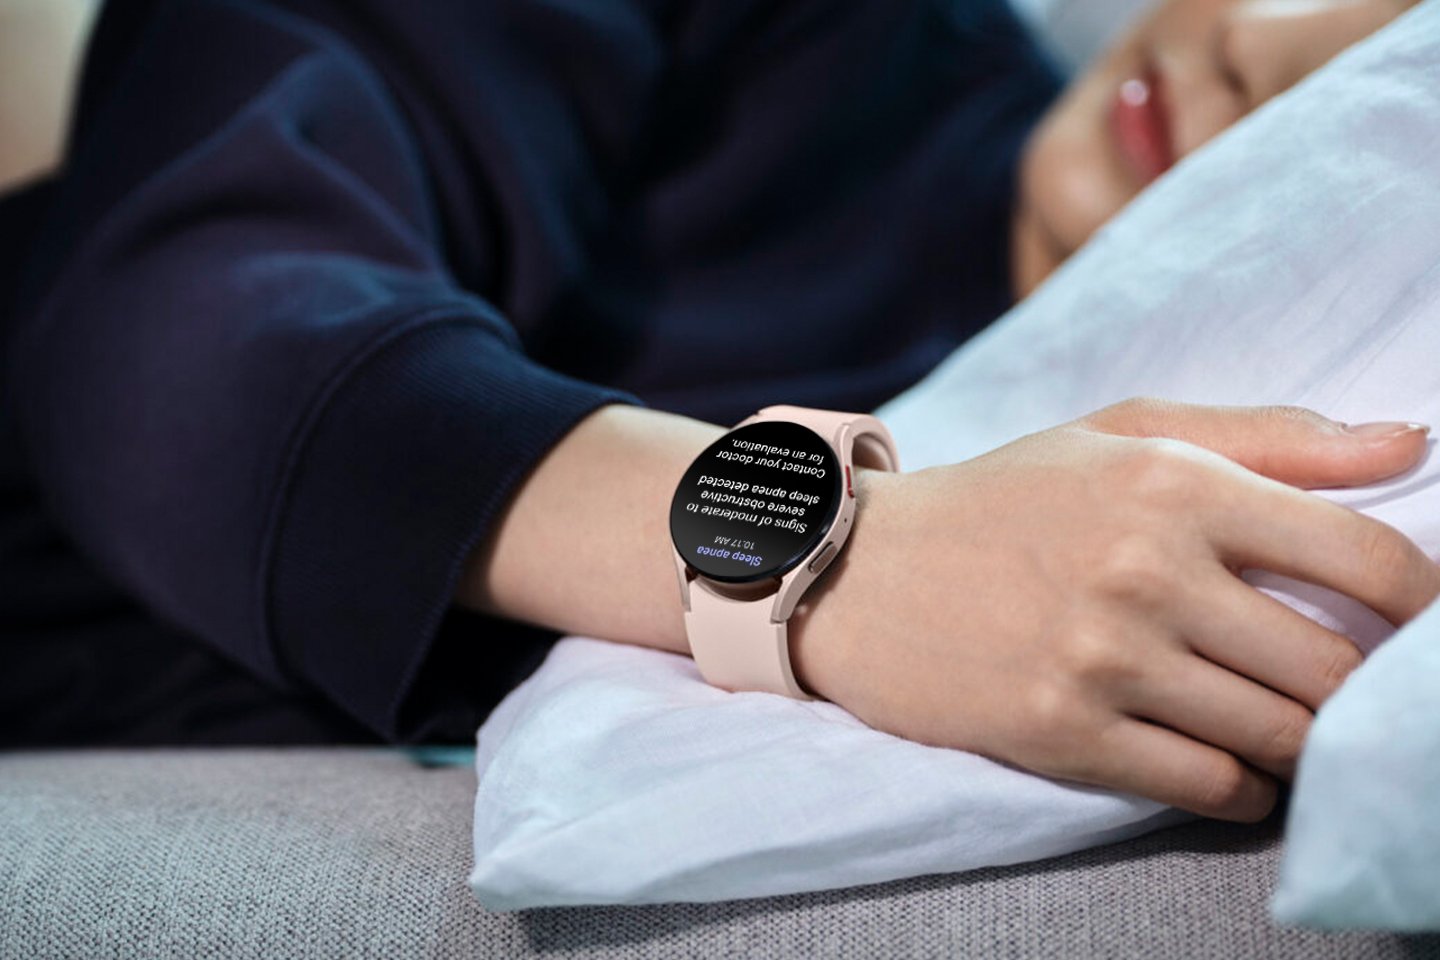 سامسونج تحصل على ترخيص إدارة الغذاء والدواء الأمريكيّة لميّزة “انقطاع التنفّس أثناء النوم” على ساعة Galaxy Watch